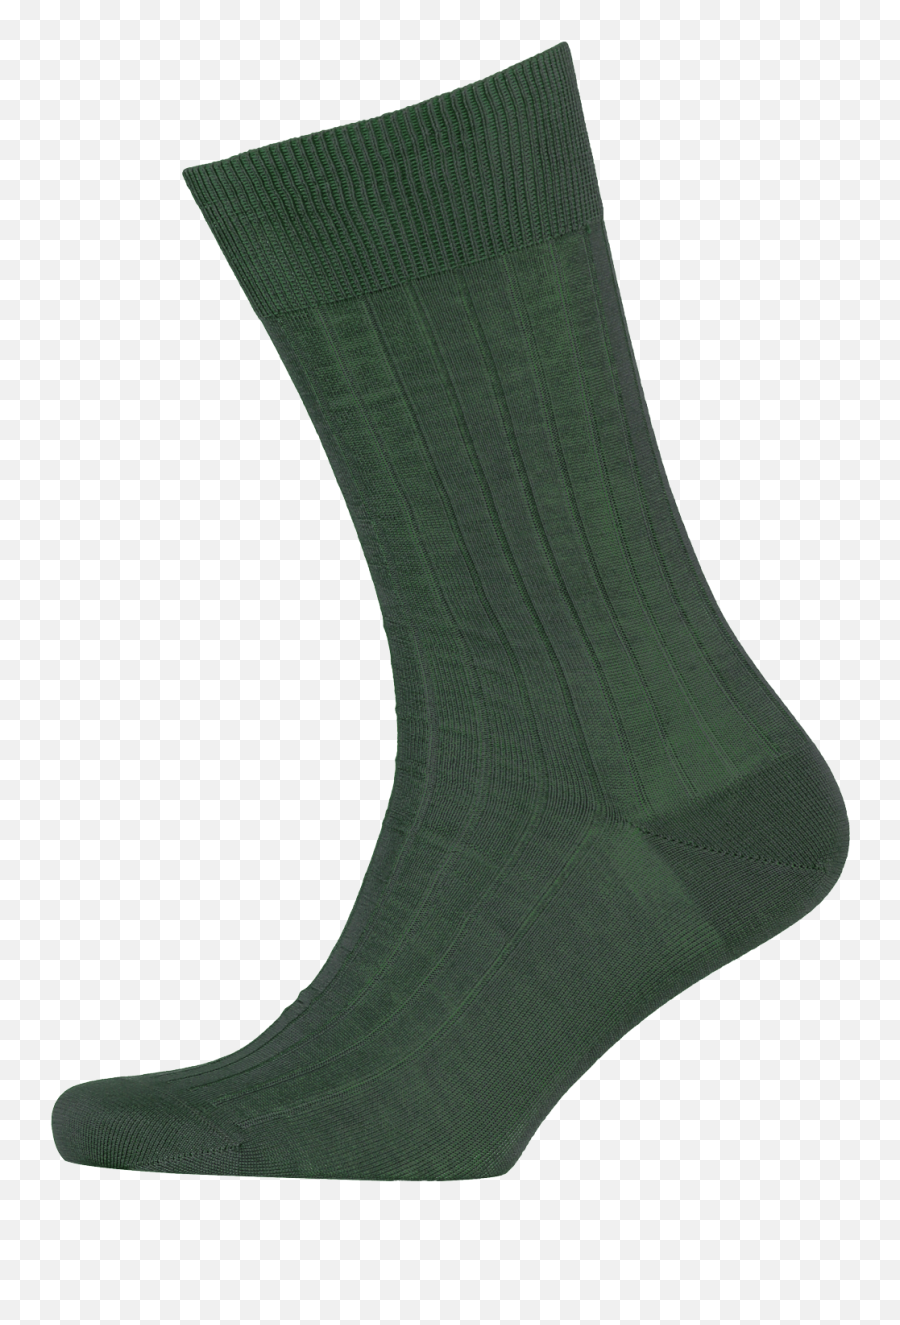 Coloured Socks - Bottle Green Sock Png,Socks Png